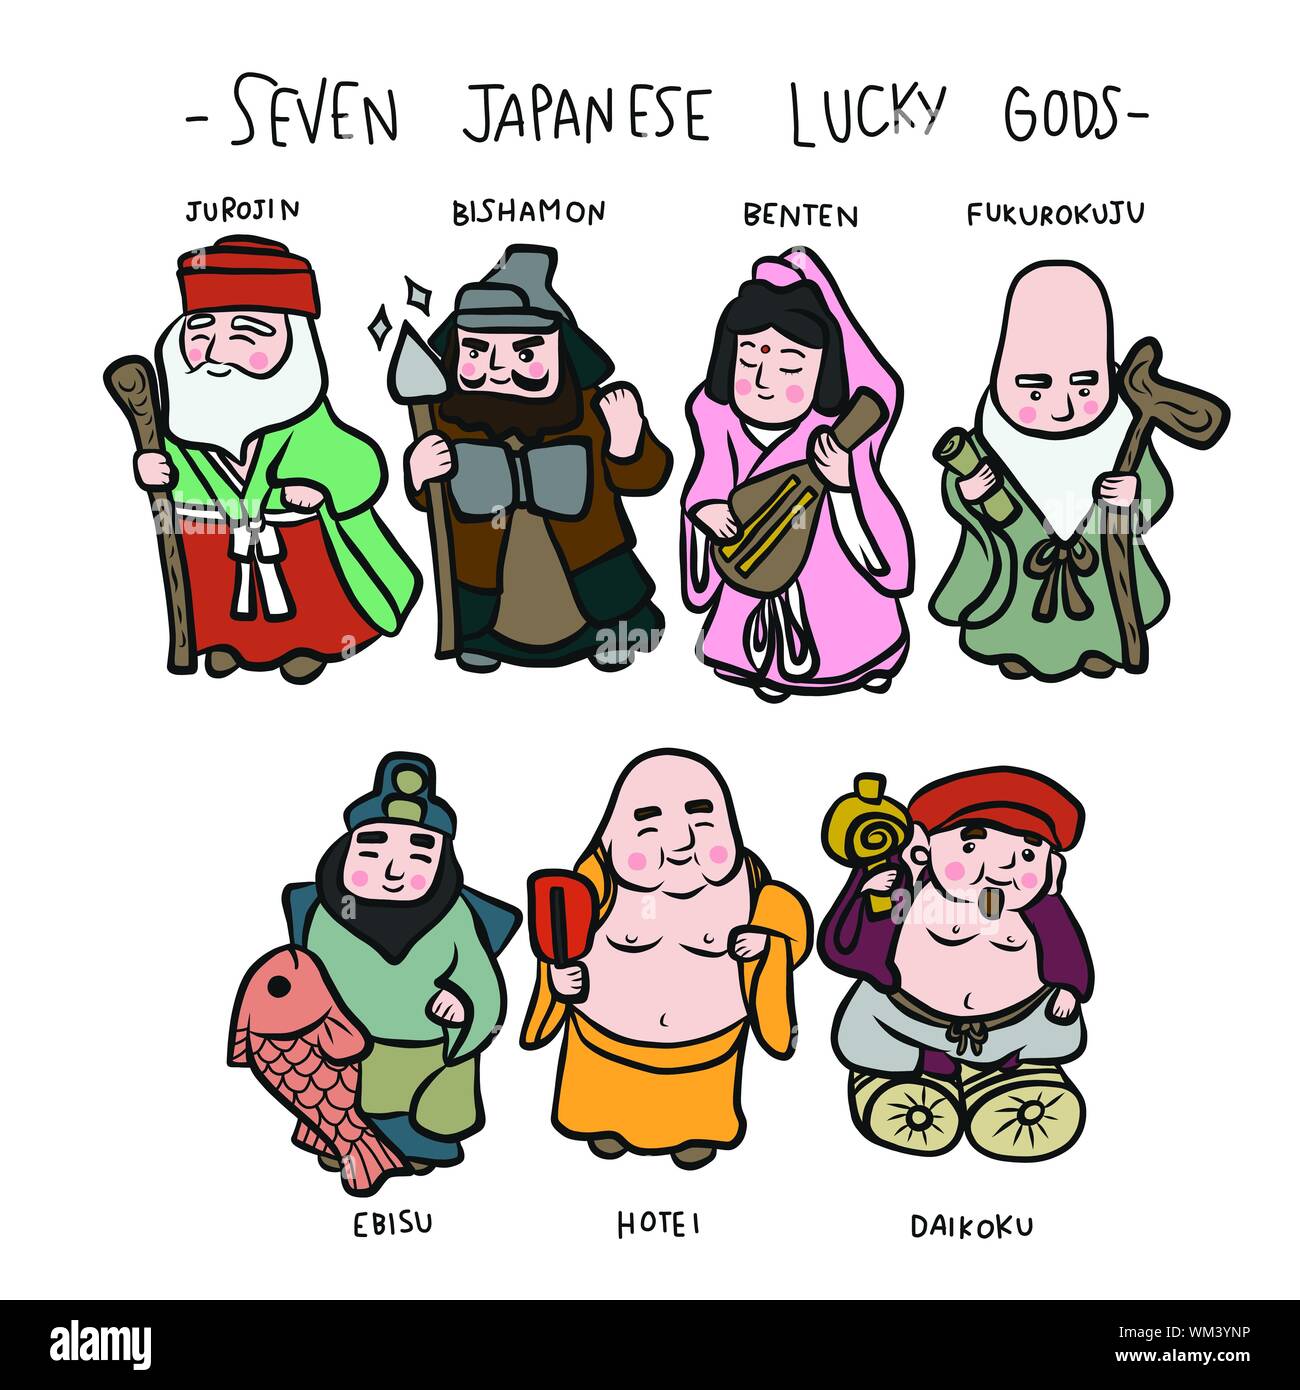 Sieben japanische Glücksgötter mit ihrem Namen Cartoon Doodle Set vektorgrafik Stock Vektor